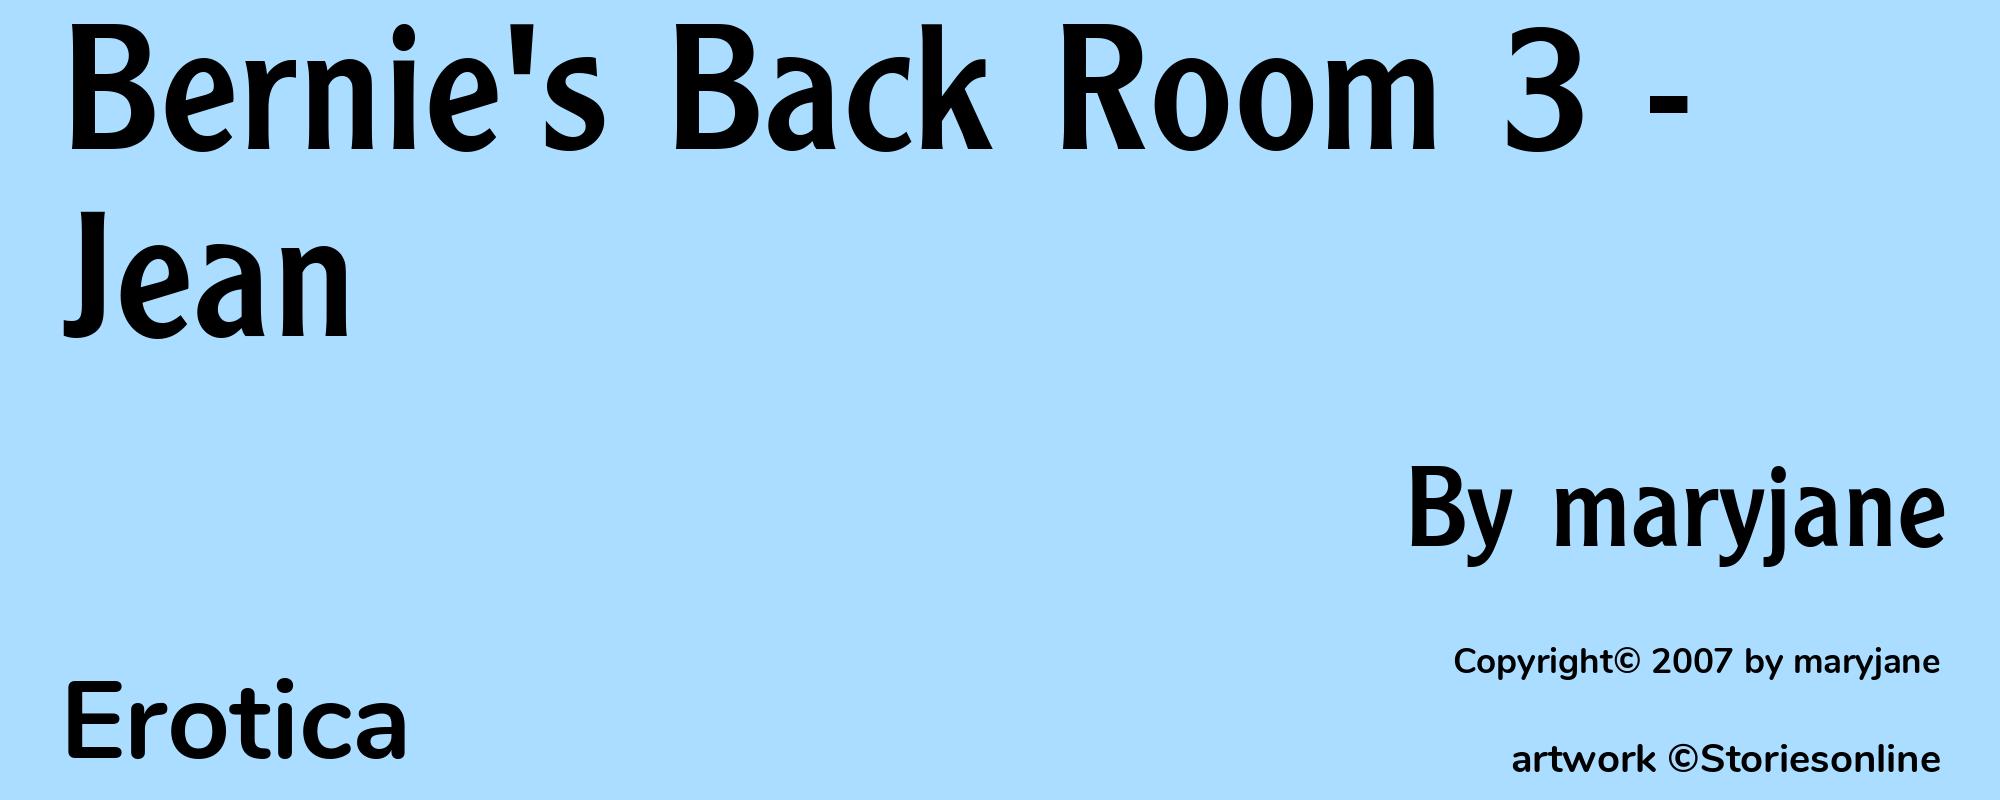 Bernie's Back Room 3 - Jean - Cover